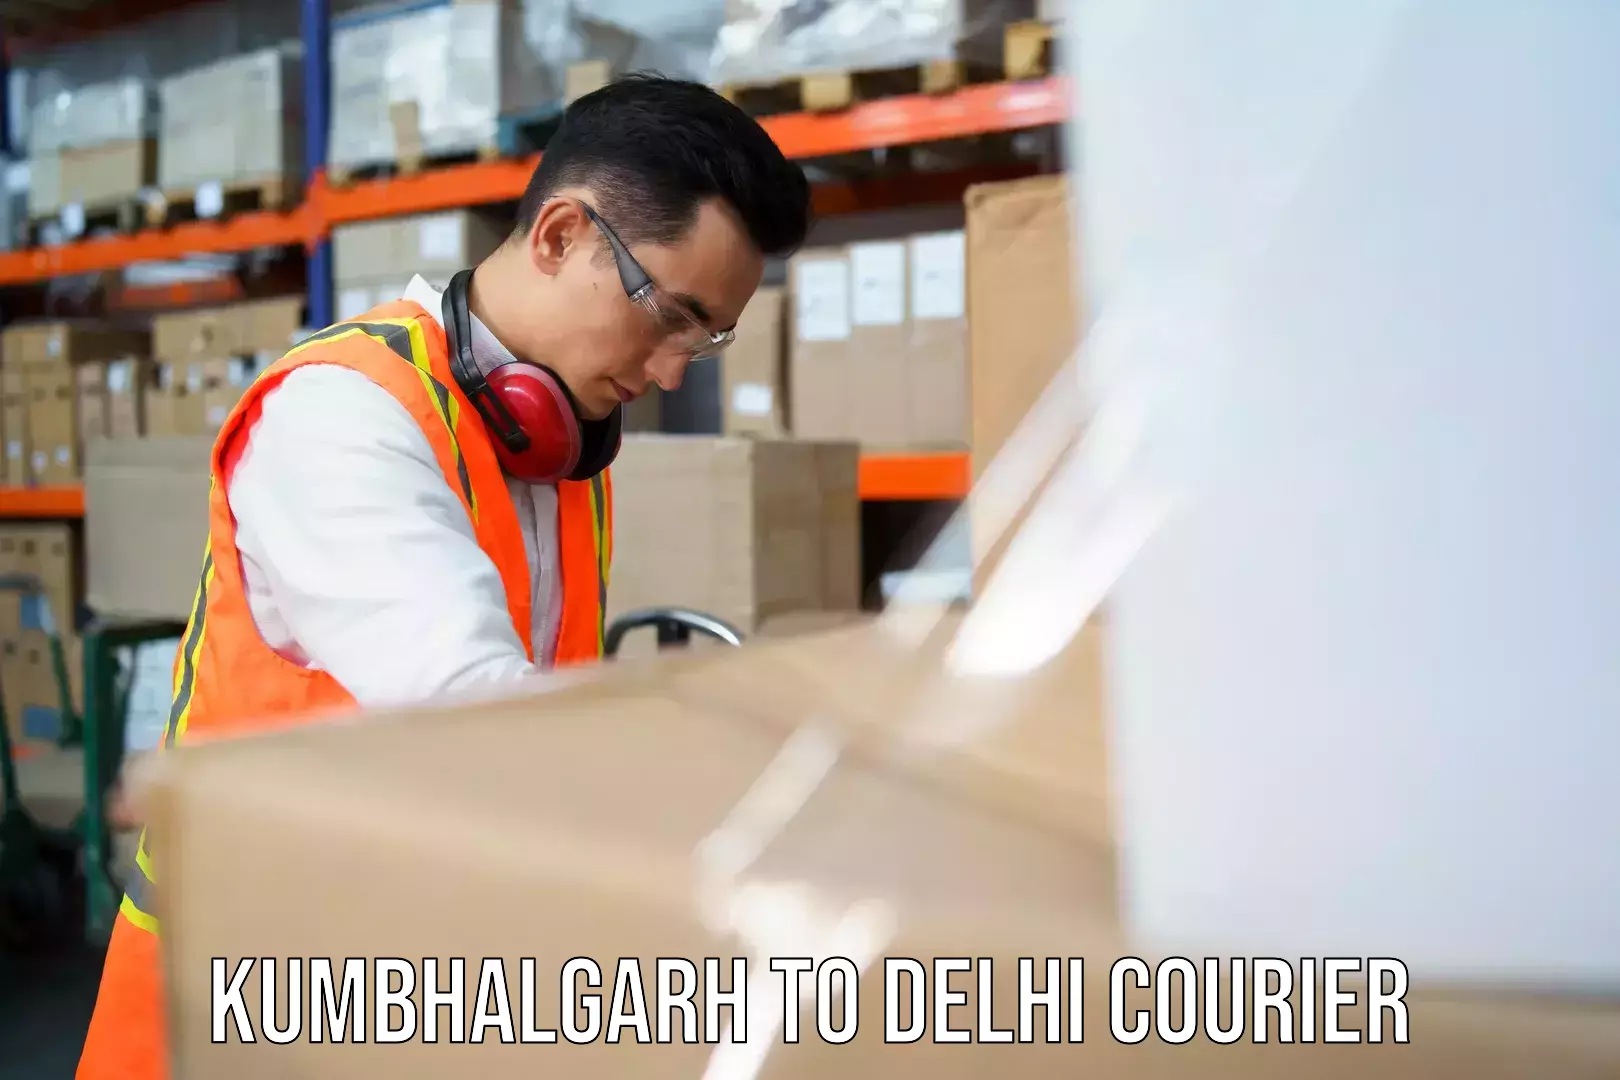 Cross-border shipping Kumbhalgarh to NCR